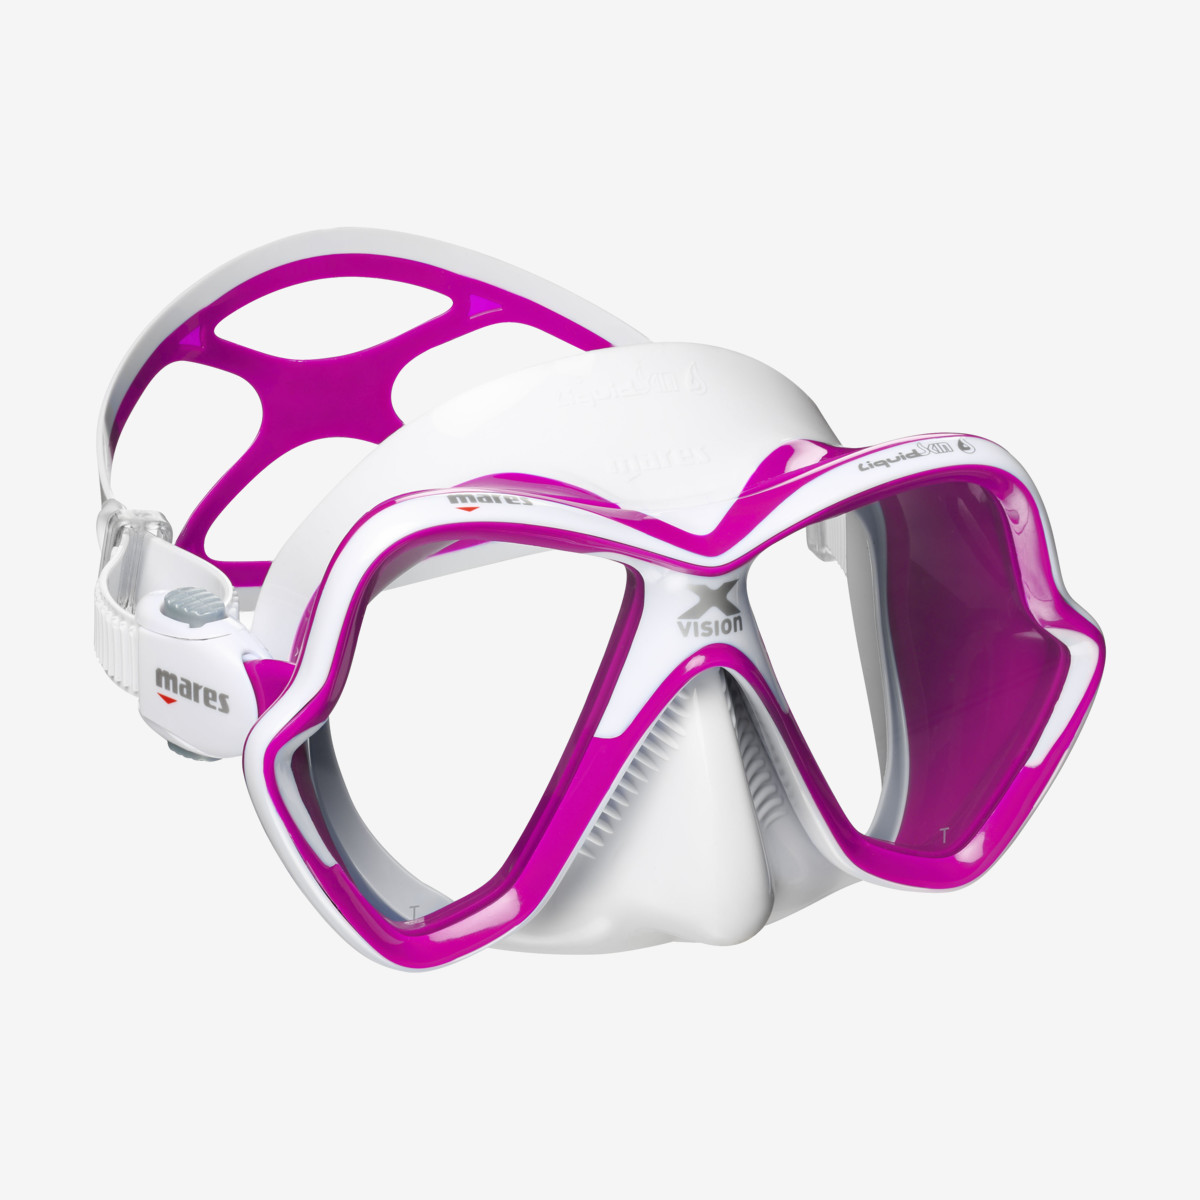 Mares Mask X-Vision Ultra Liquidskin